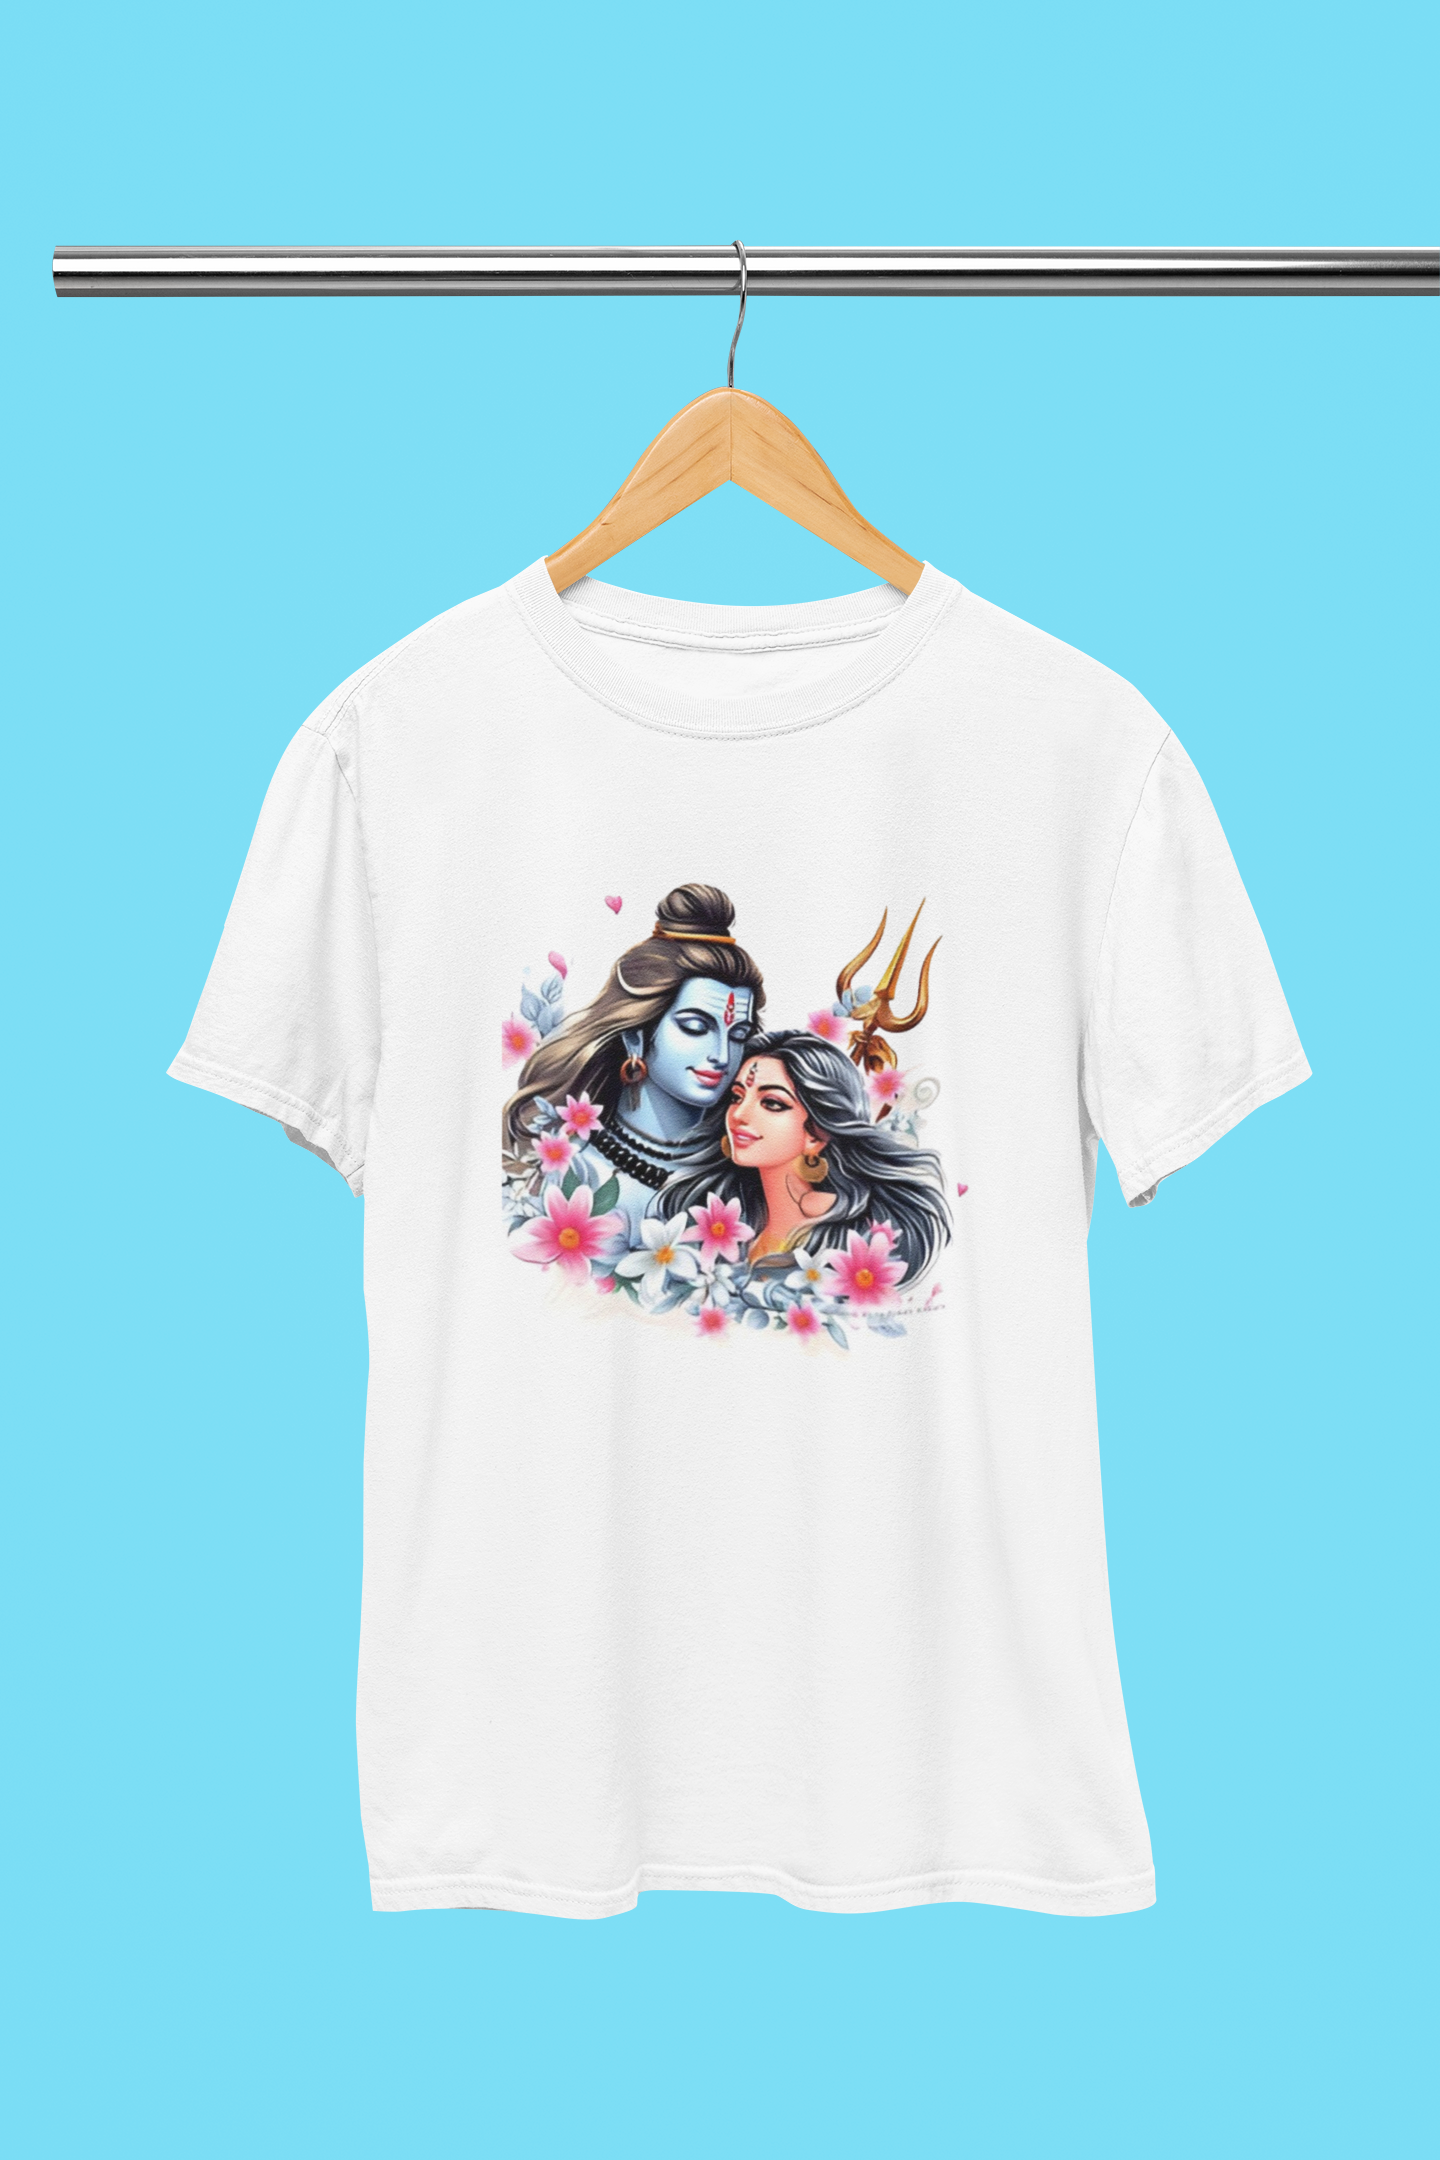 Lord Shiva Parvati Shivaratri T-Shirt